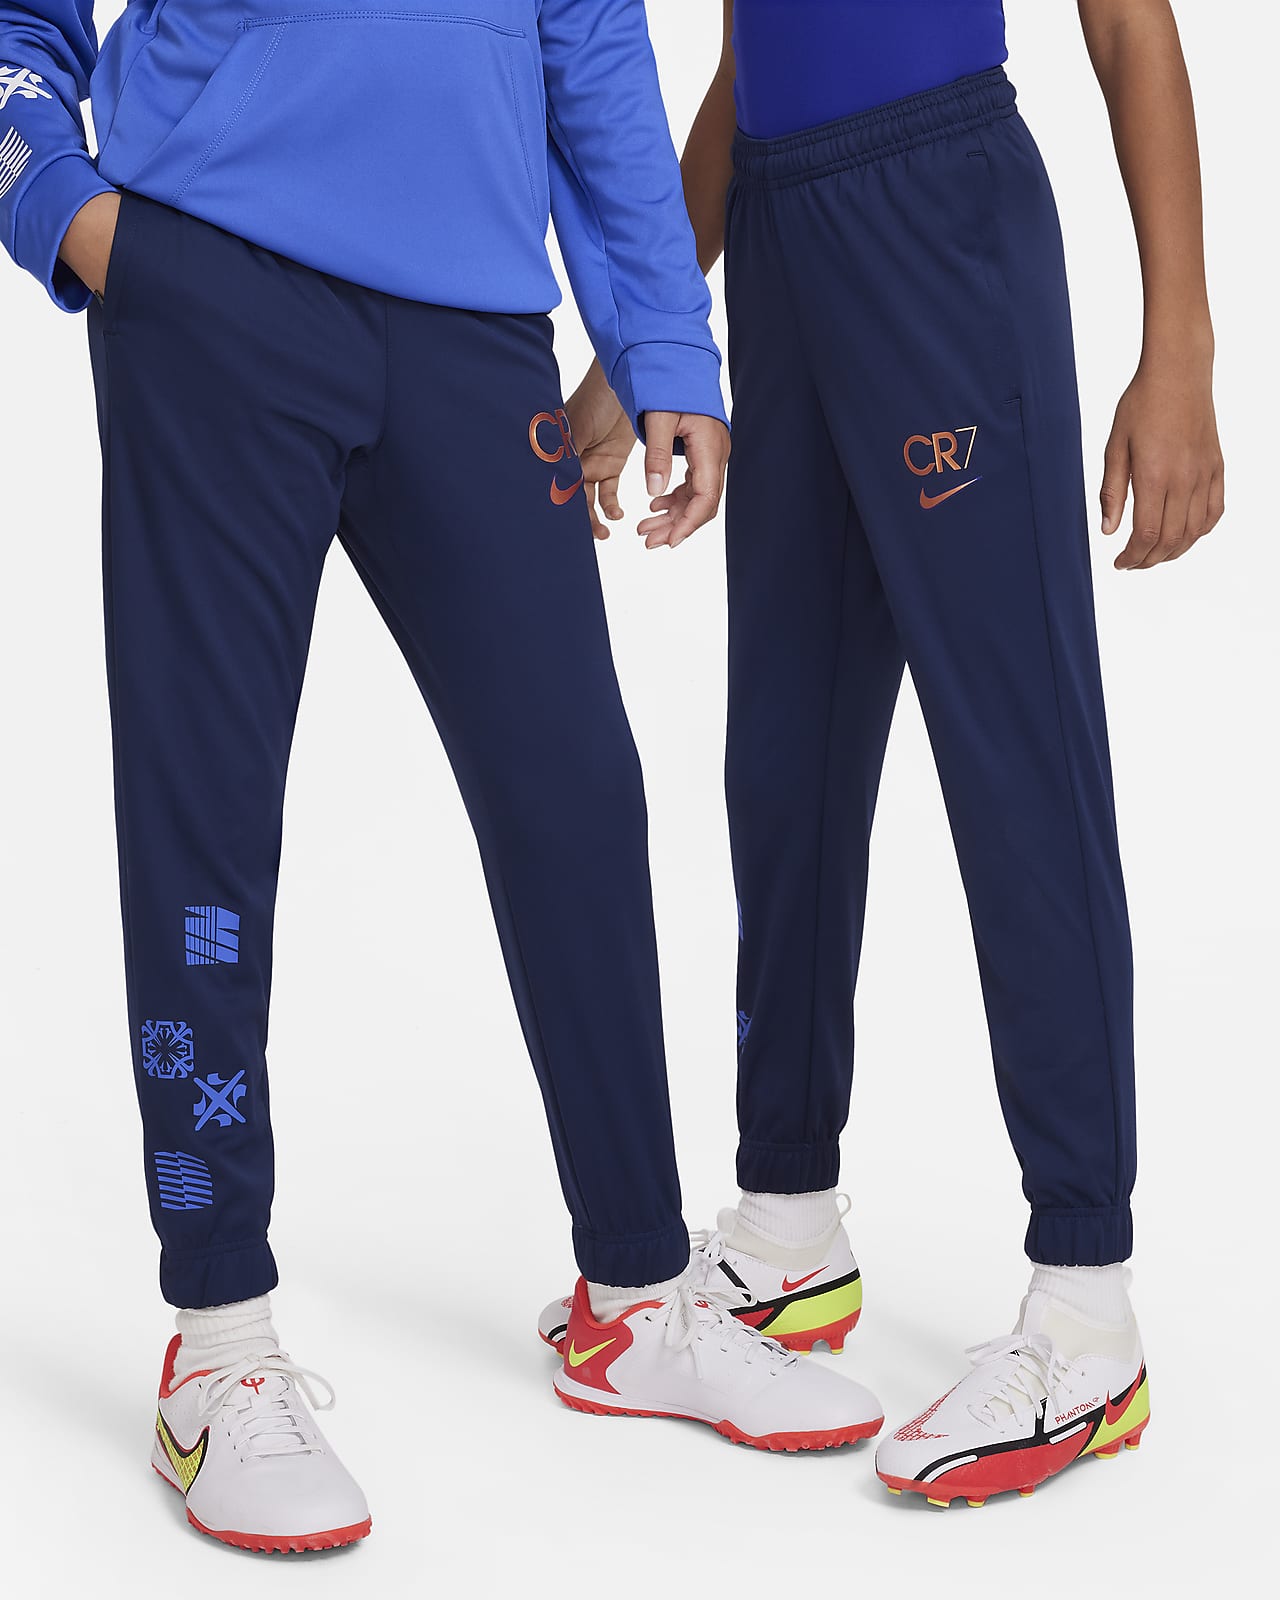 CR7 Older Kids' Football Pants. Nike LU